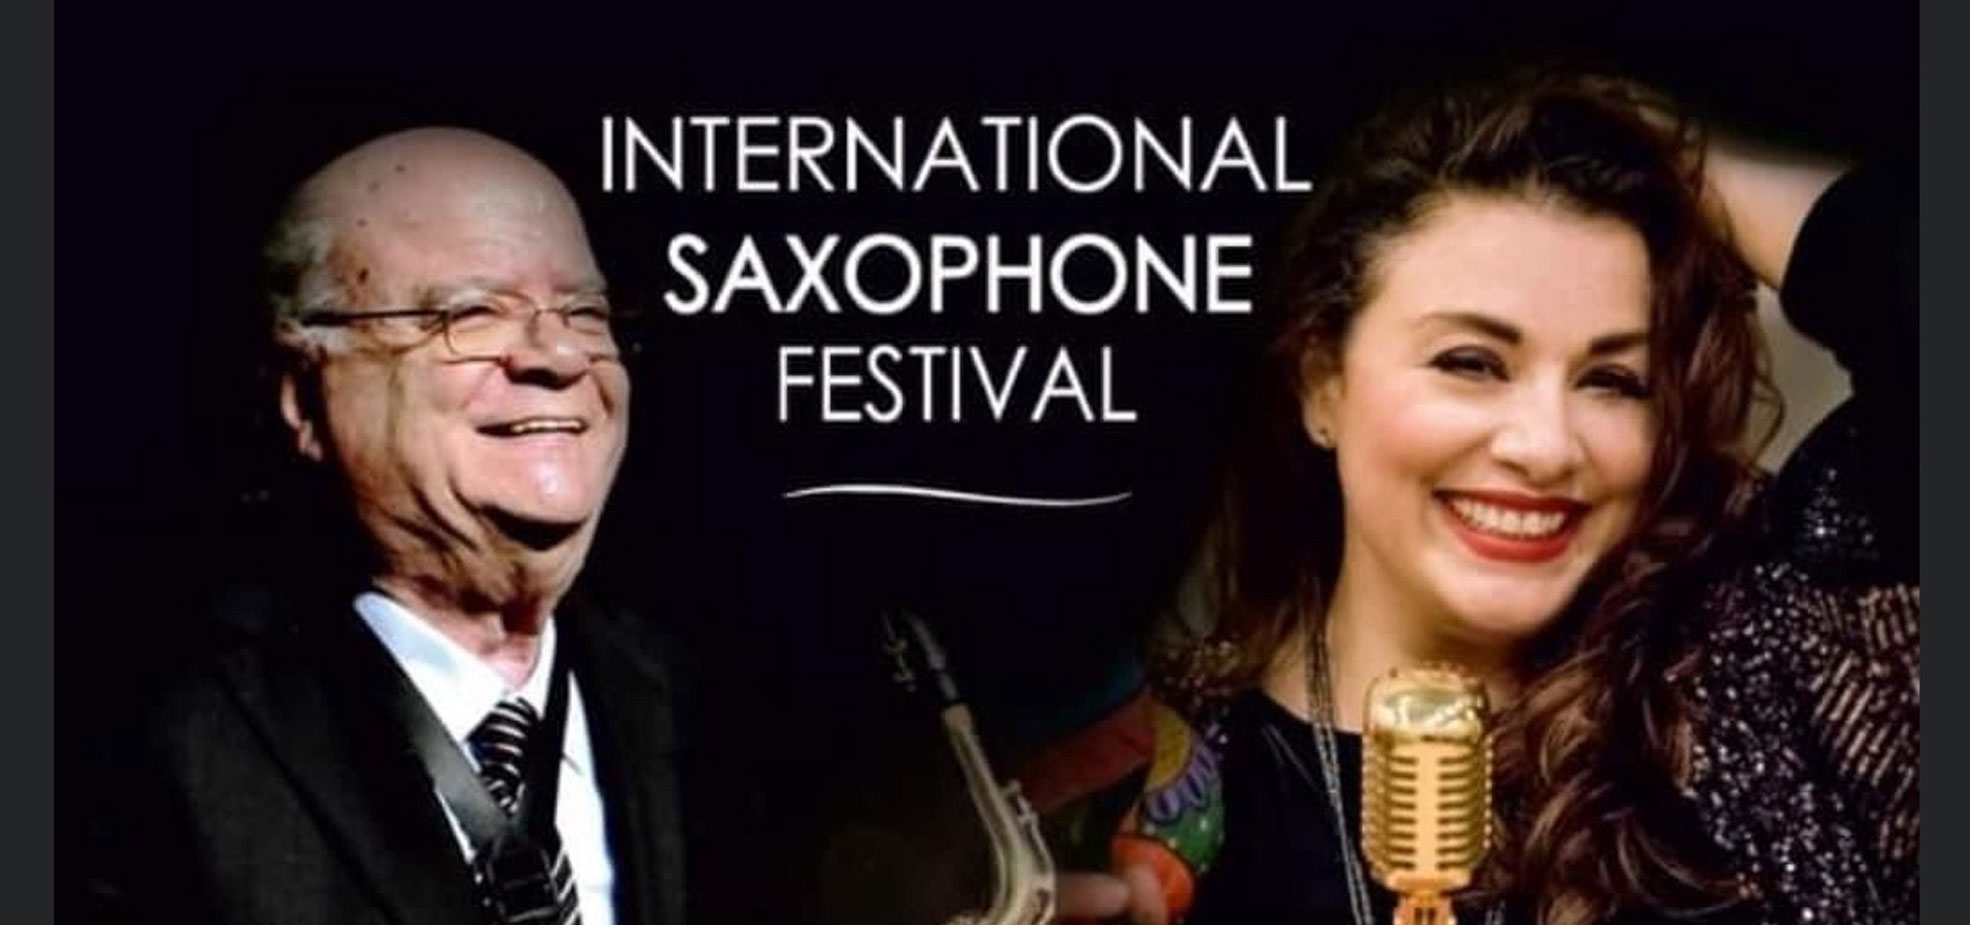 INTERNATIONAL SAXOPHONE FESTIVAL LARISSA 2022
8ο Διεθνές Φεστιβάλ Σαξοφώνου στη Λάρισα
Τους καλύτερους Σαξοφωνίστες της χώρας και όχι μόνο, θα φιλοξενήσει το…Διαβάστε περισσότερα